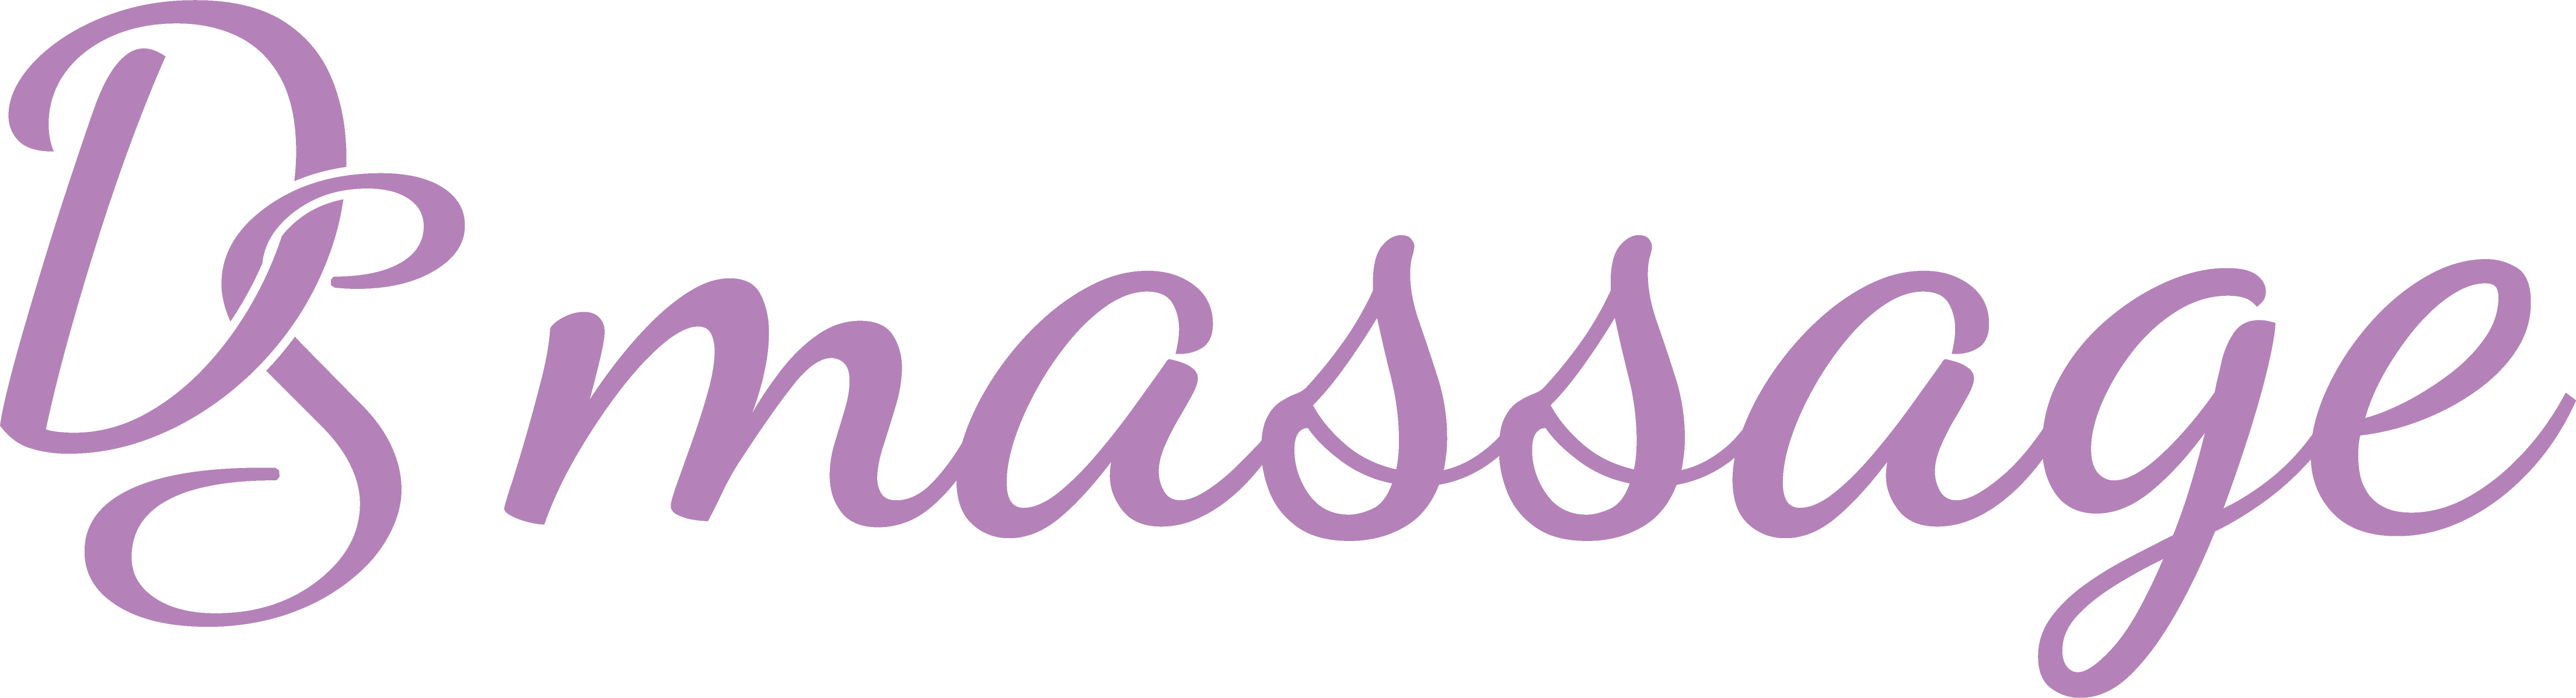 Logo - Sabine Dreier - DSmassage - Massage classique, corps, dos, jambes - Oron-la-Ville